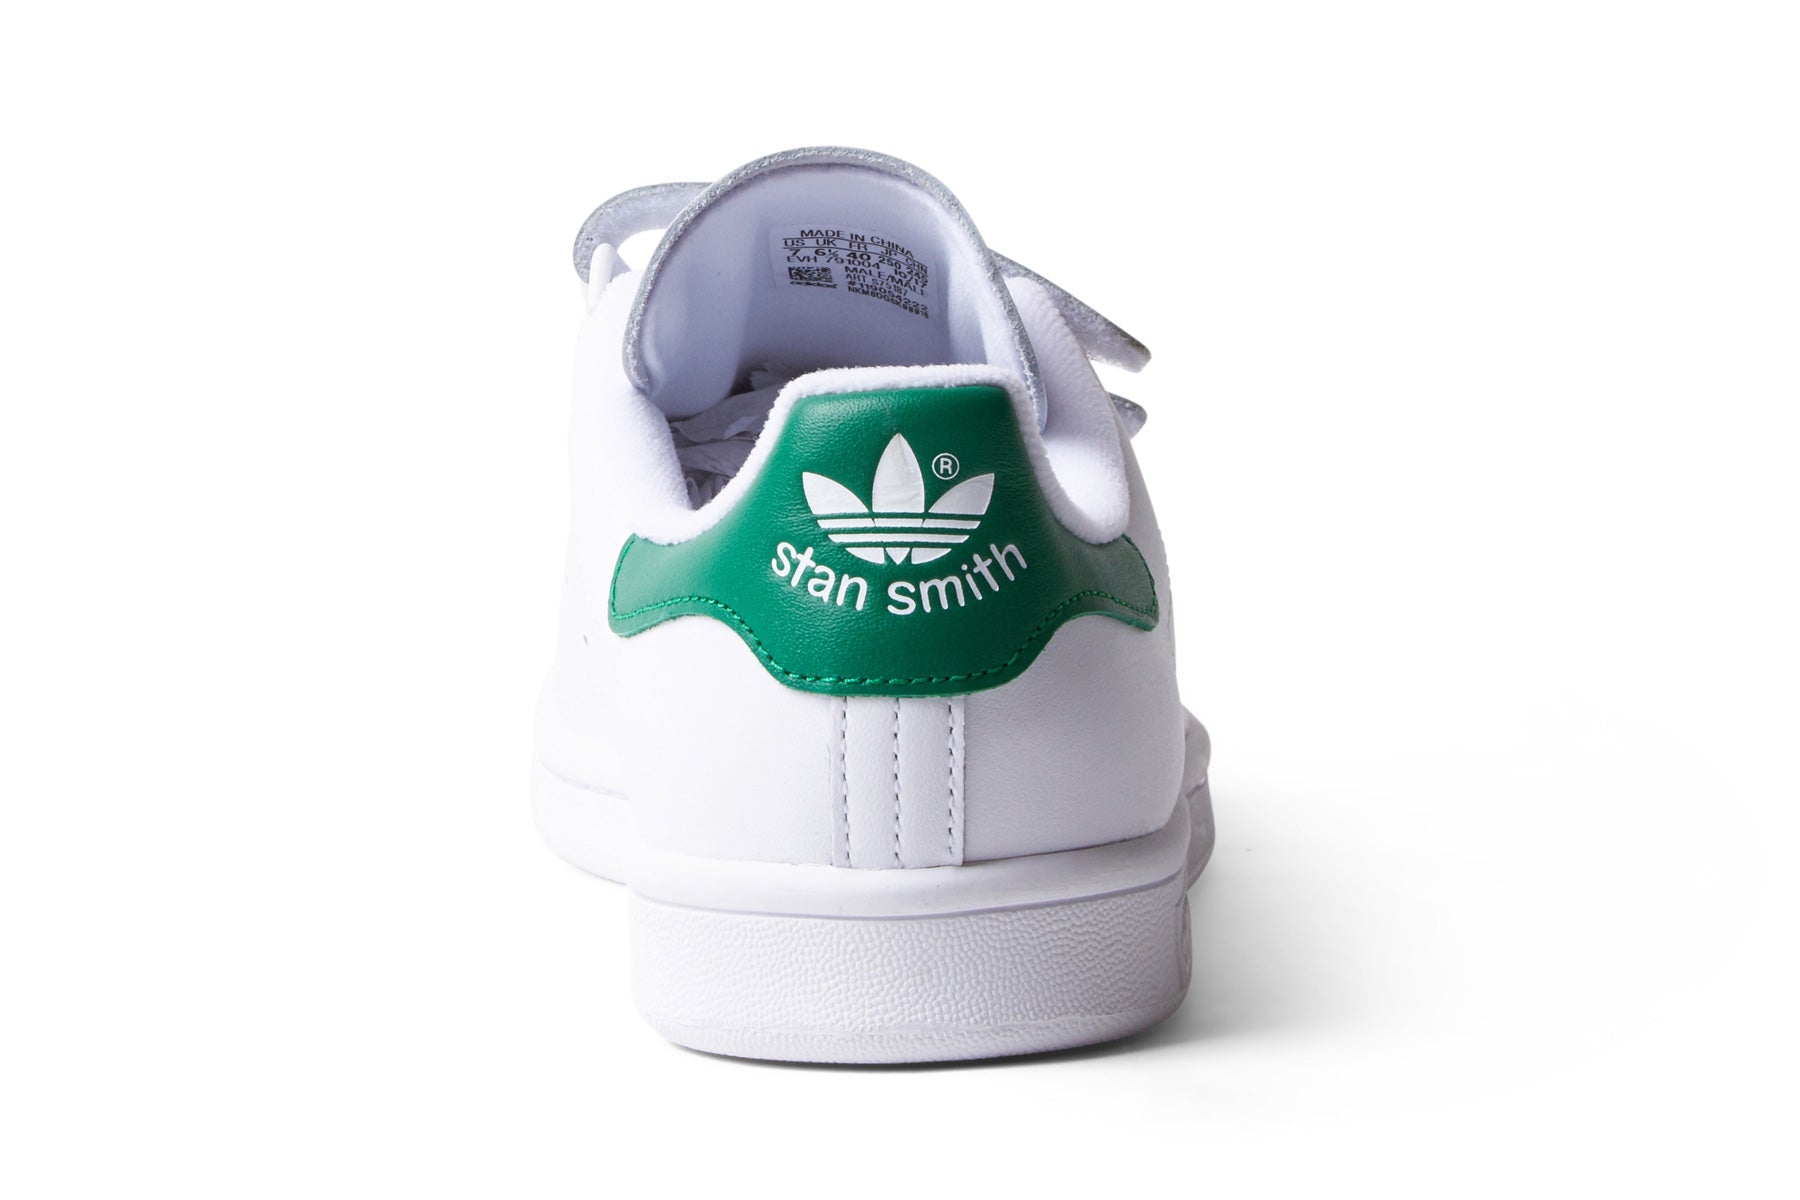 Adidas Stan Smith CF - White/Green